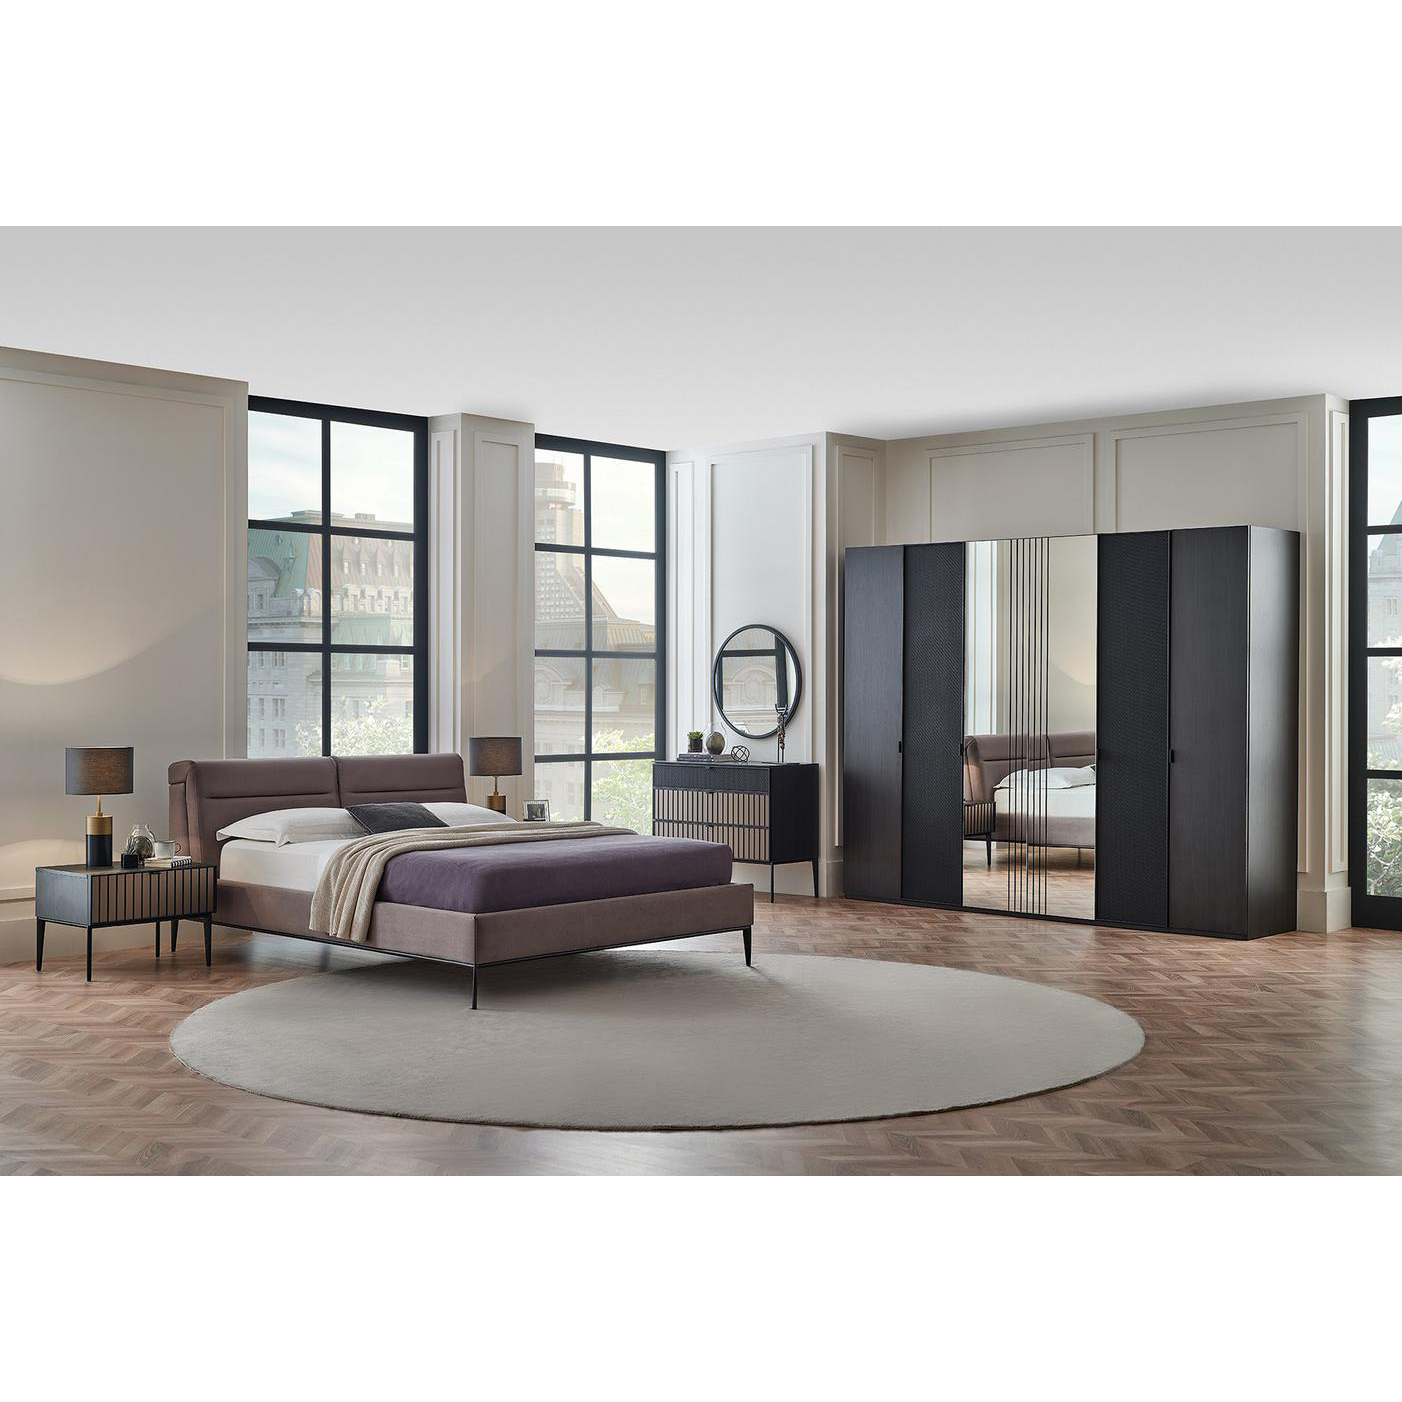 Кровать Enza Home Riga, двуспальная, с подъемным механизмом, 180х200 см